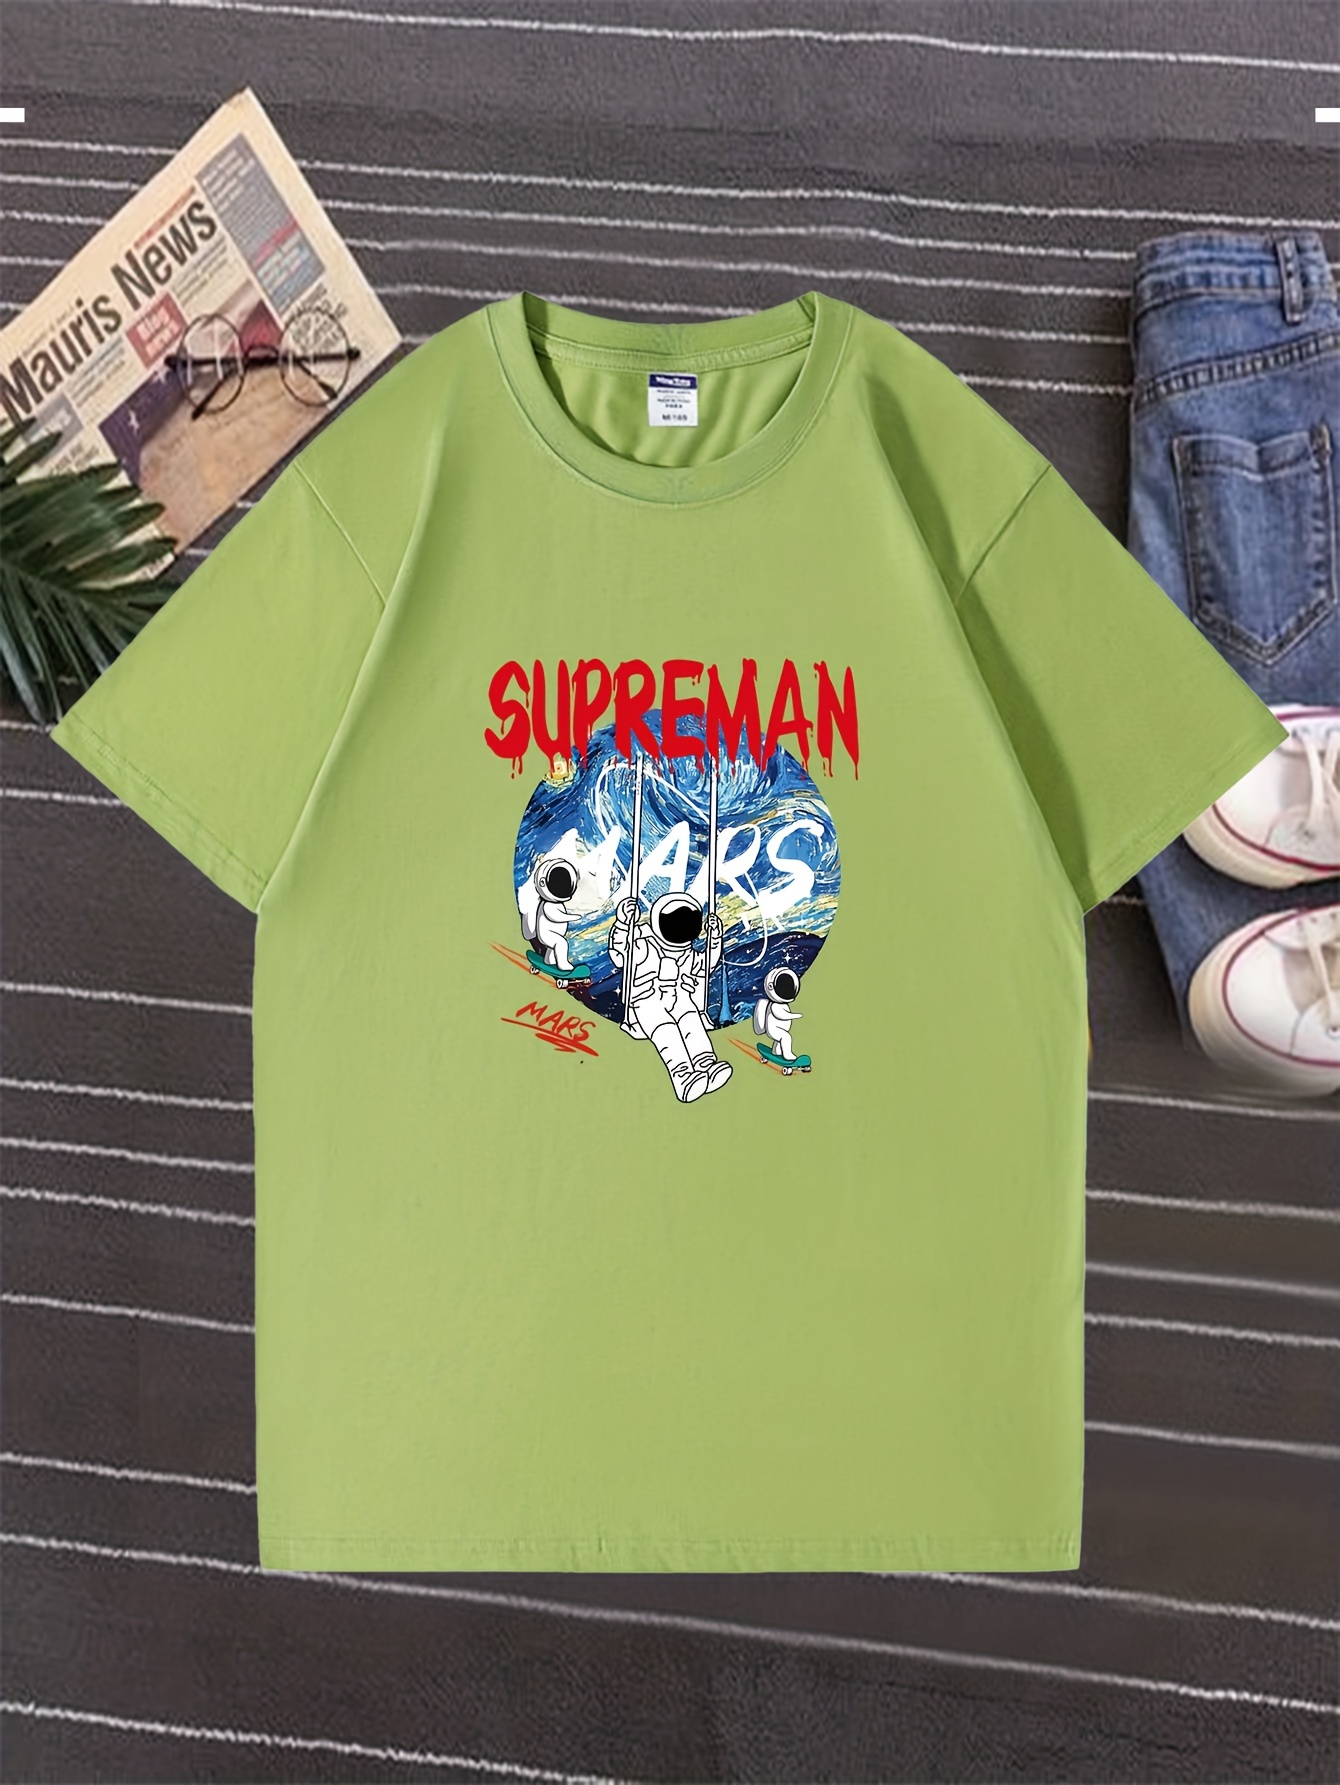 Superman - Camiseta para hombre, color blanco